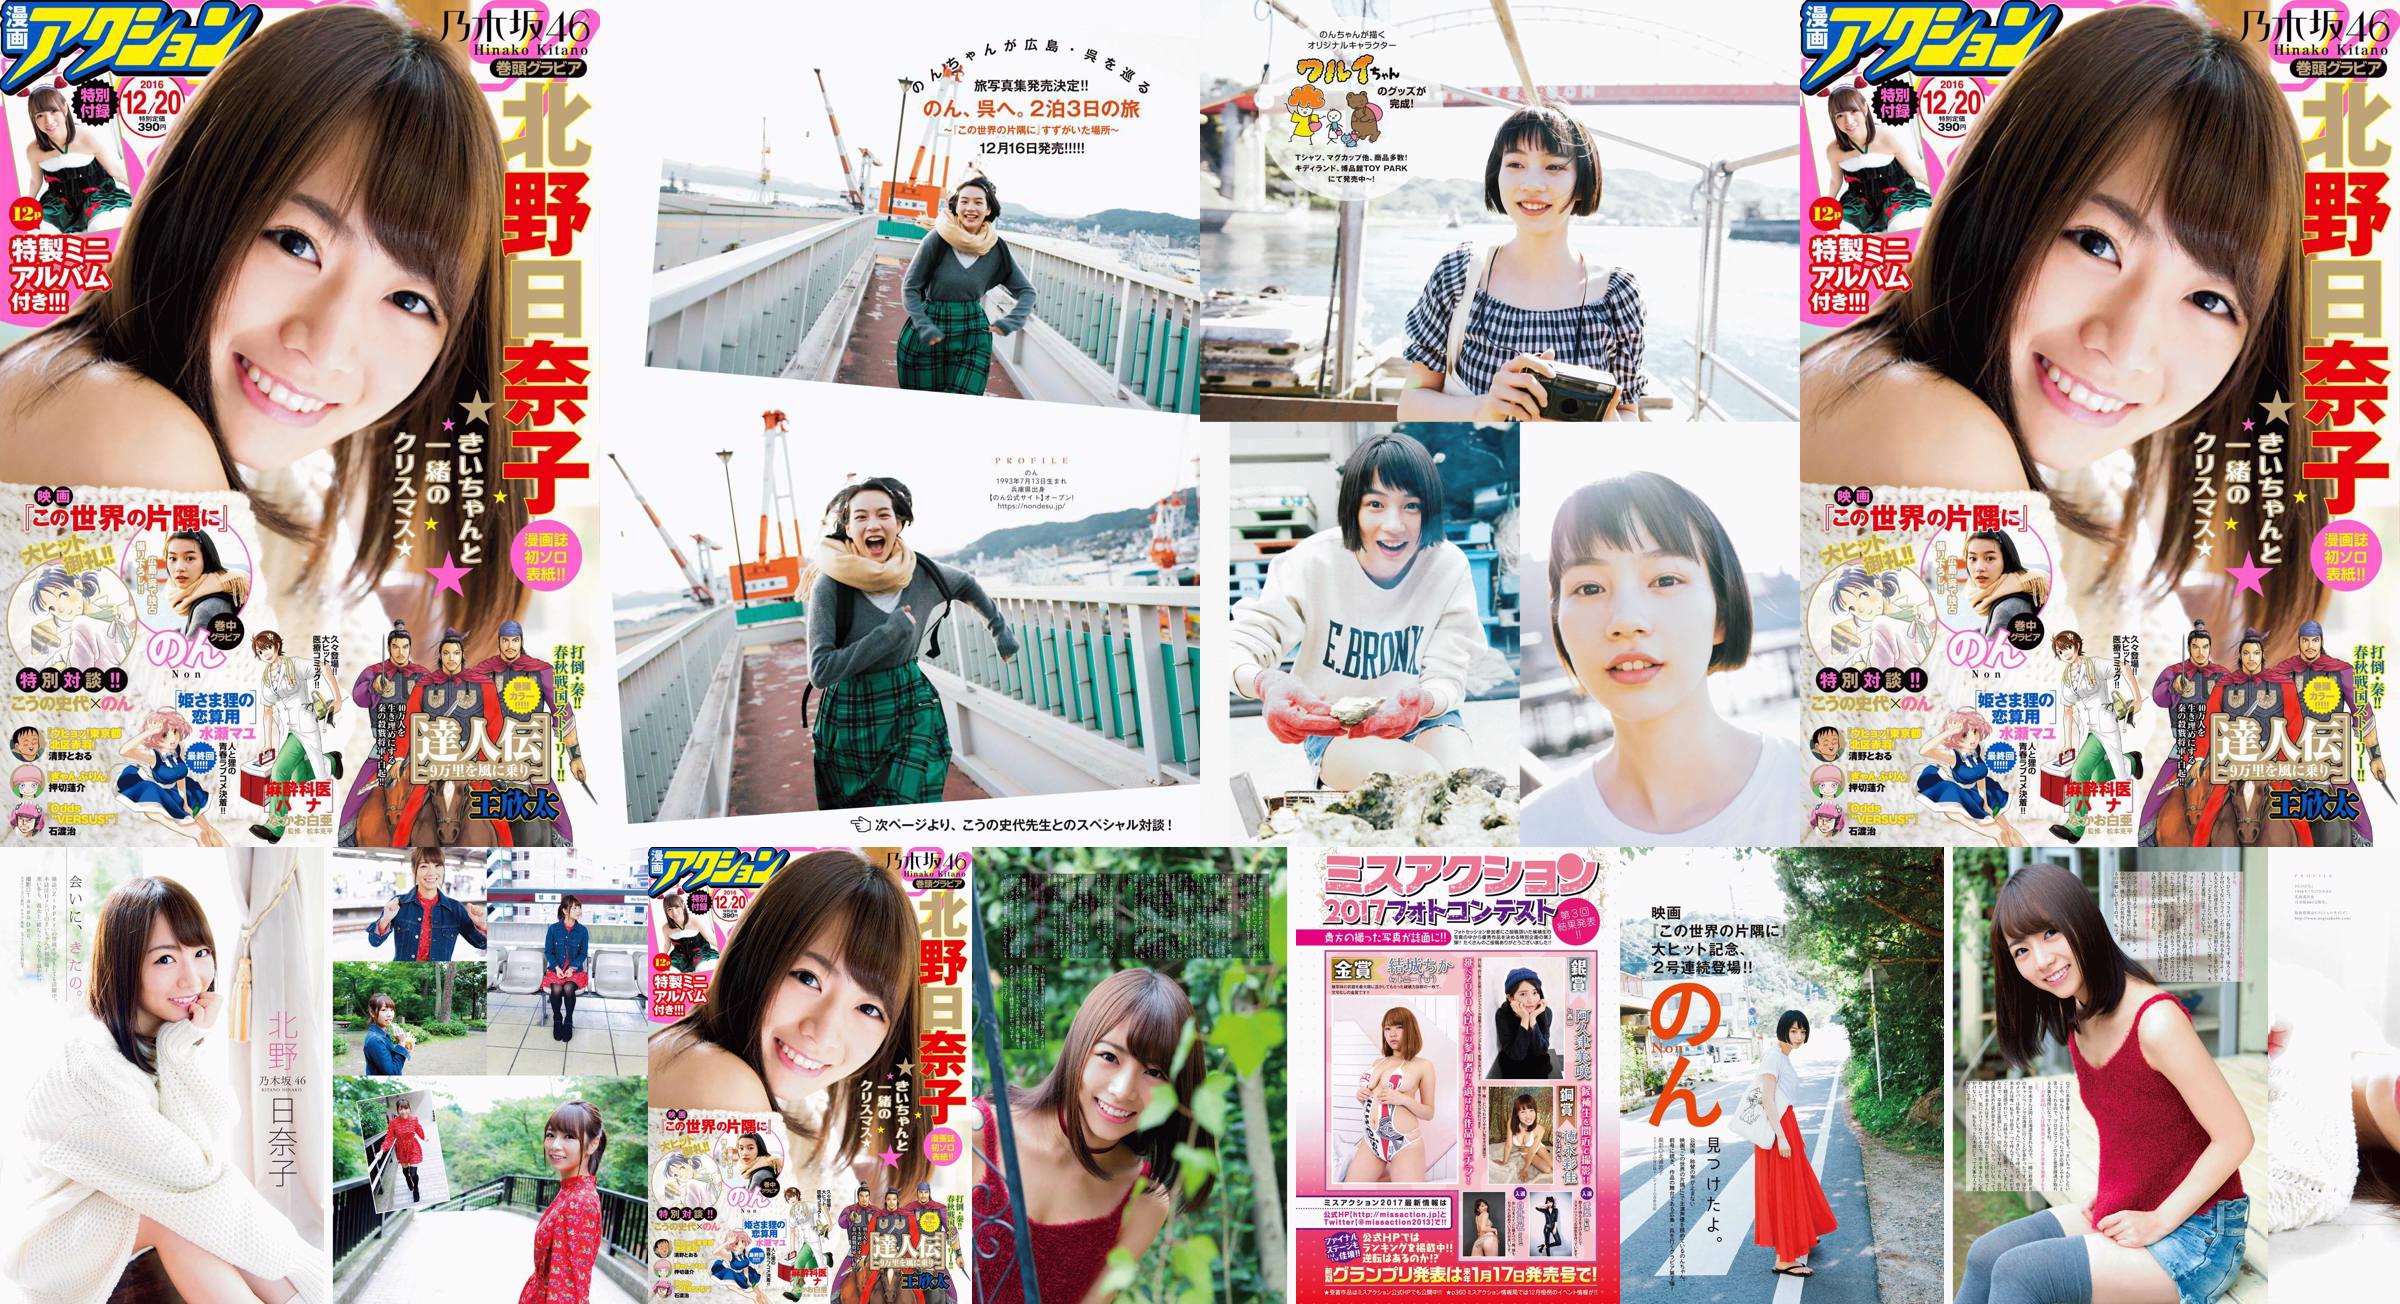 [Manga Action] Kitano Hinako の ん Tạp chí ảnh số 24 năm 2016 No.7f51a5 Trang 2